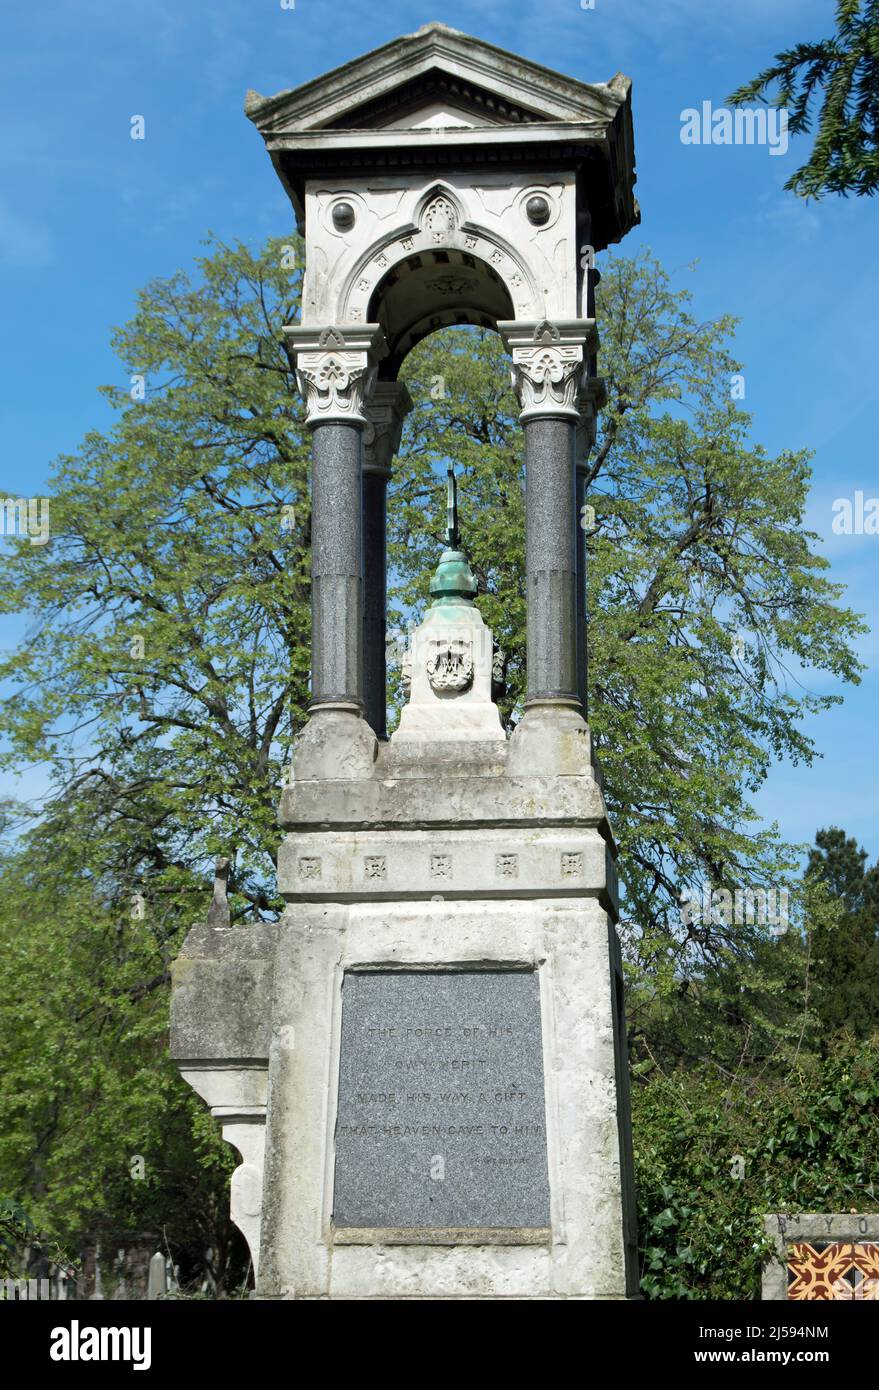 monumento a alfred mellon presso la tomba del violinista del 19th secolo, compositore e direttore d'orchestra al cimitero di brompton, londra, inghilterra Foto Stock